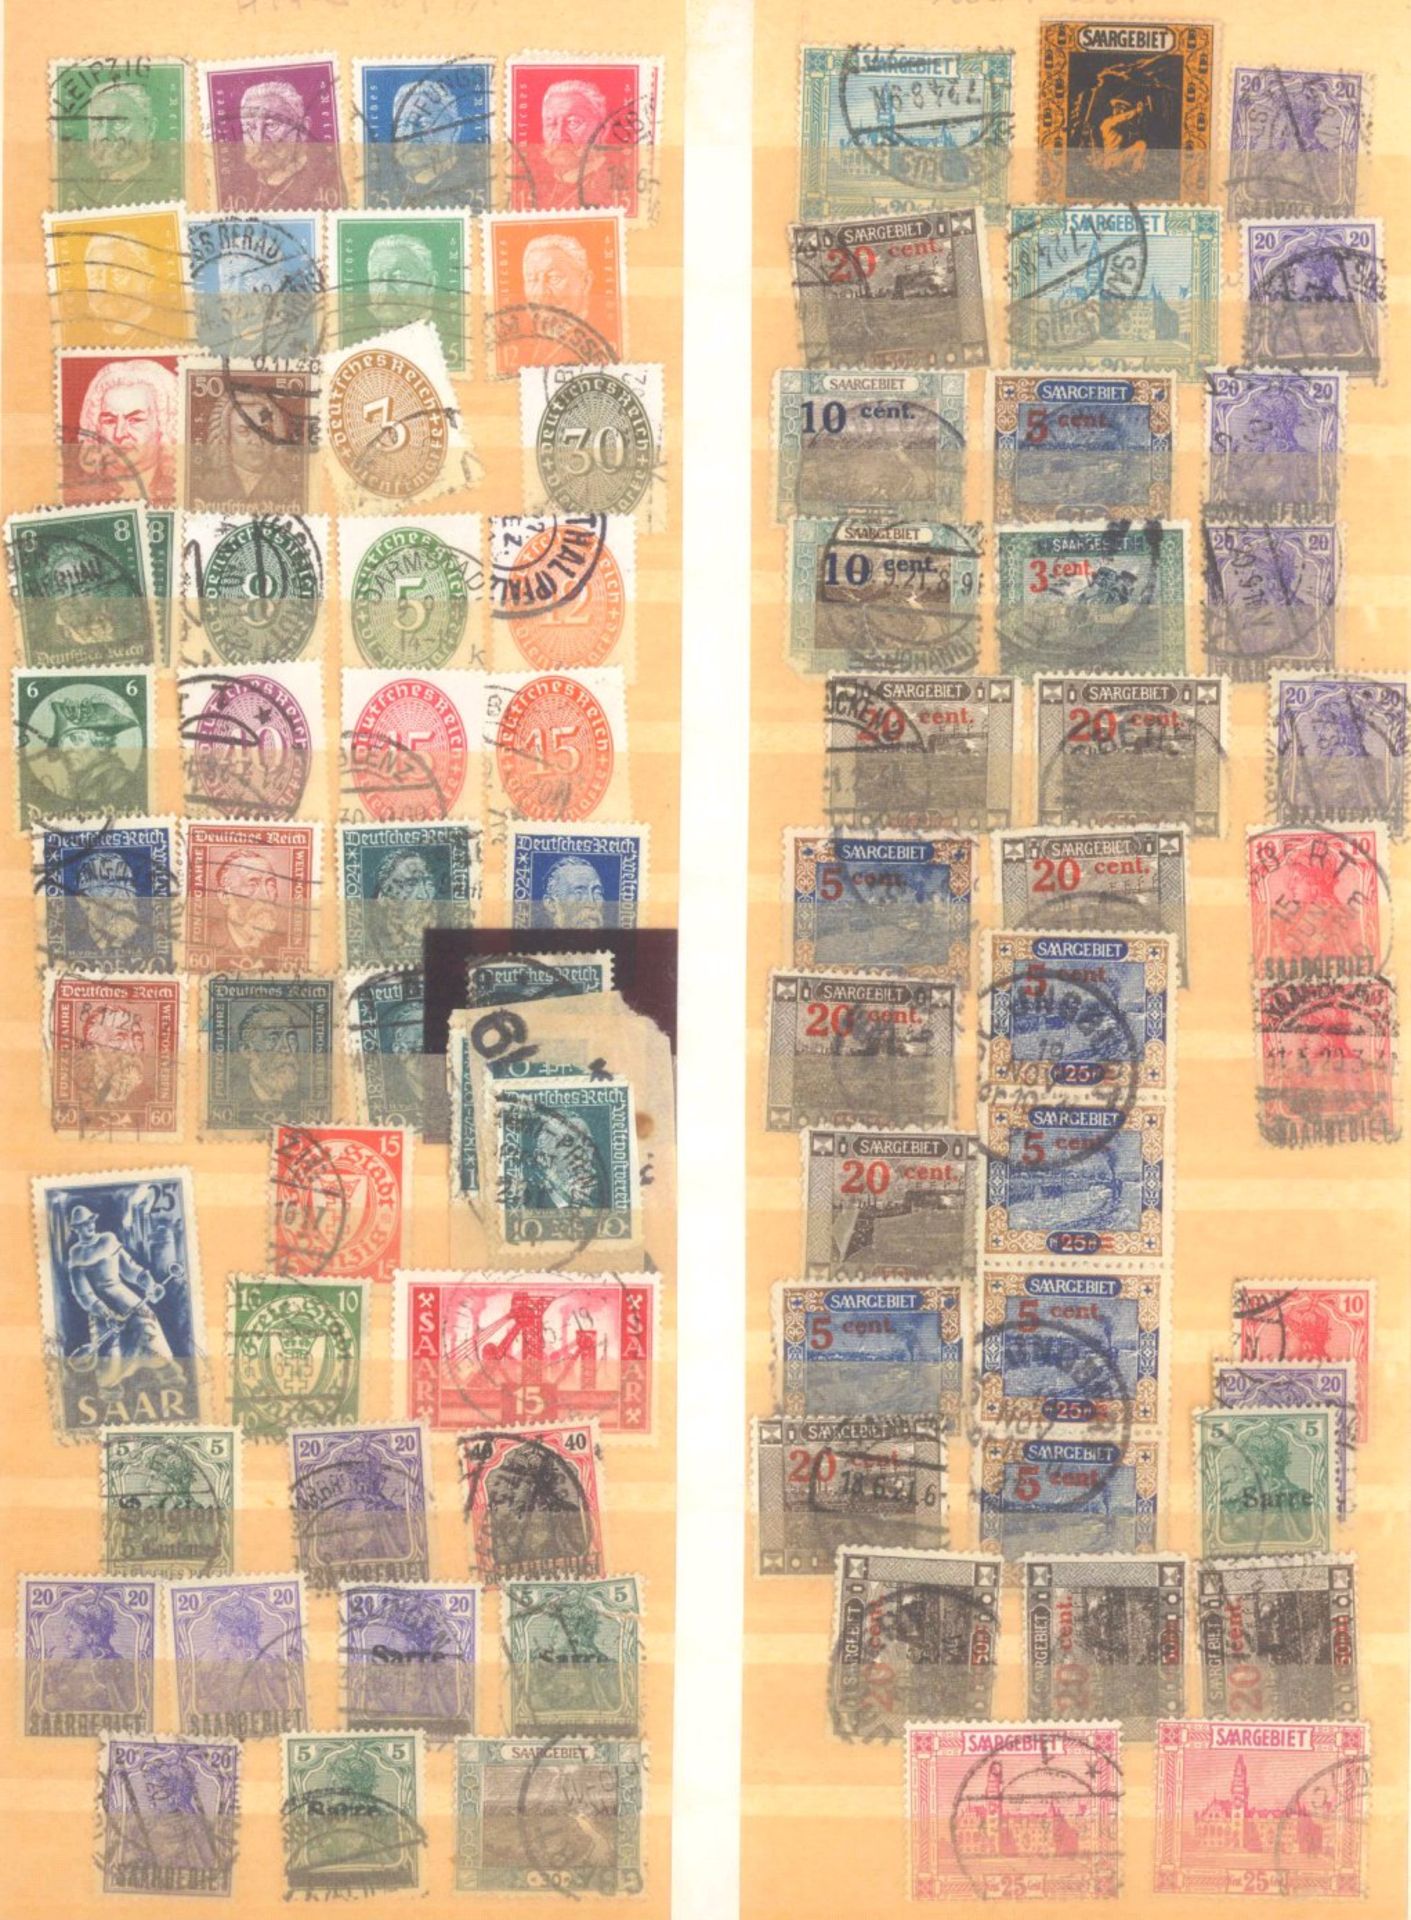 FRANKENTHALER NACHLASSuriger Nachlass mit Briefmarken und Belegen. Dabei DeutschesReich, altes - Bild 8 aus 46